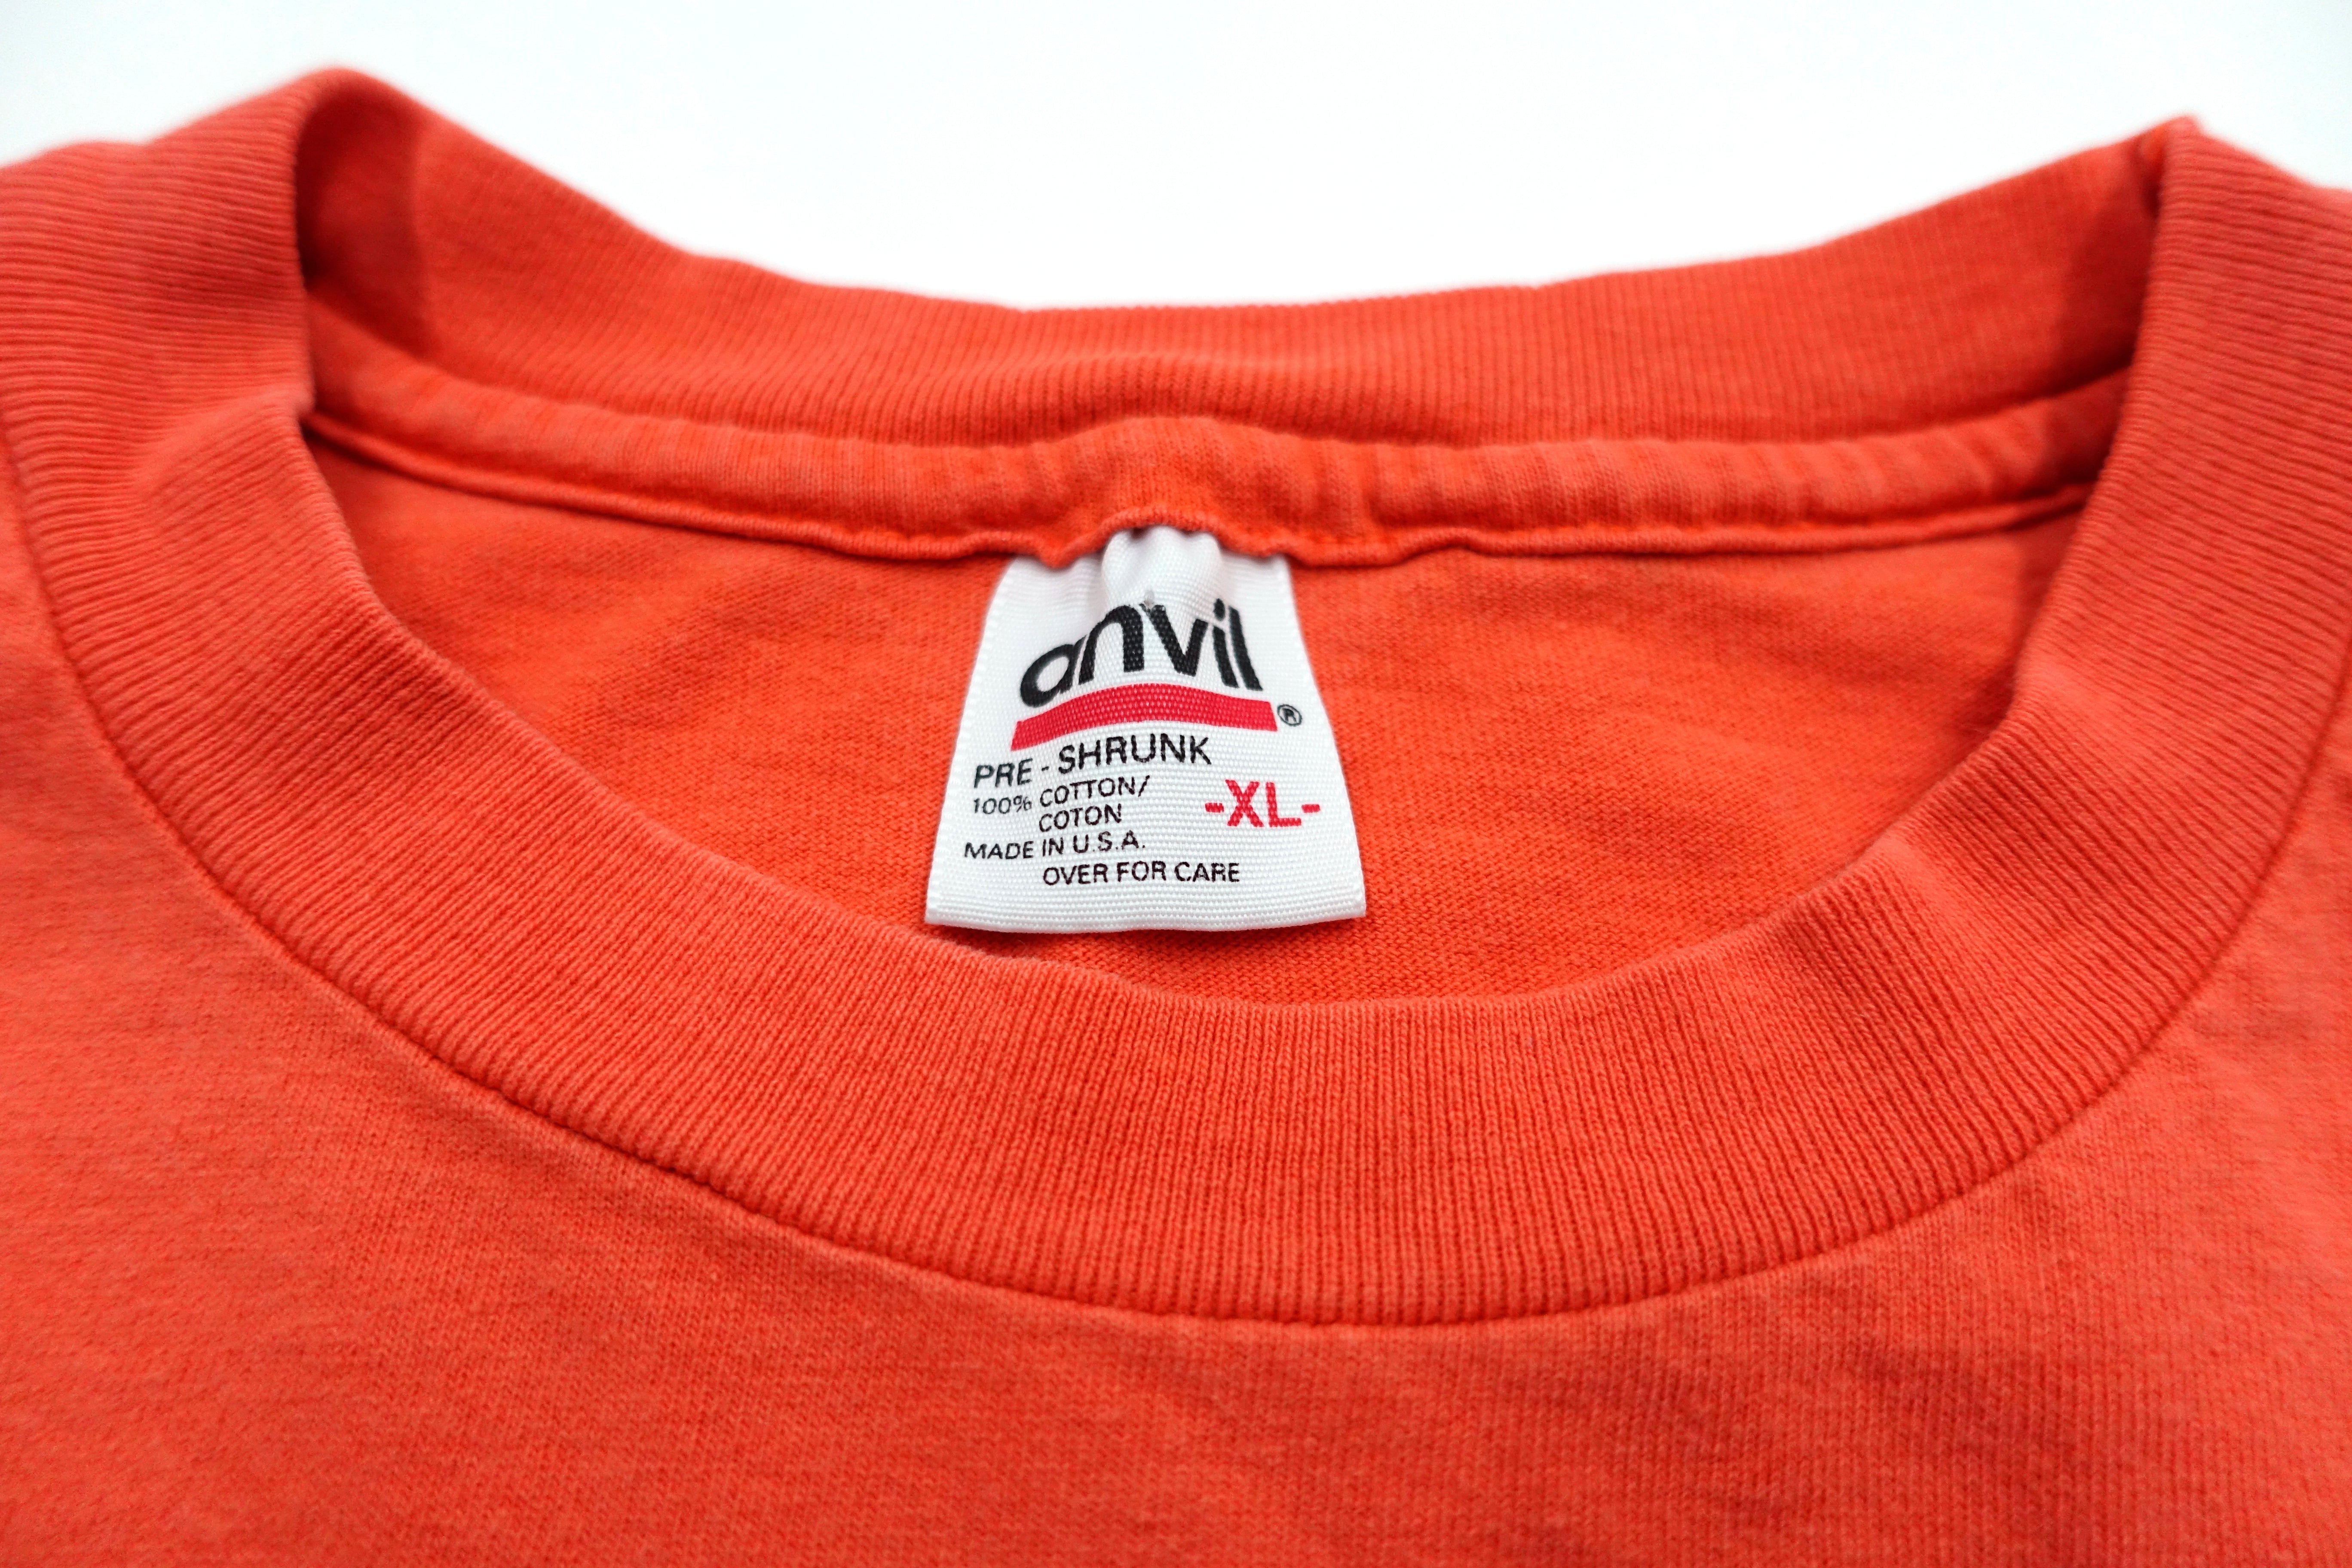 Agent Orange - Crooked Logo 90's Shirt Size XL